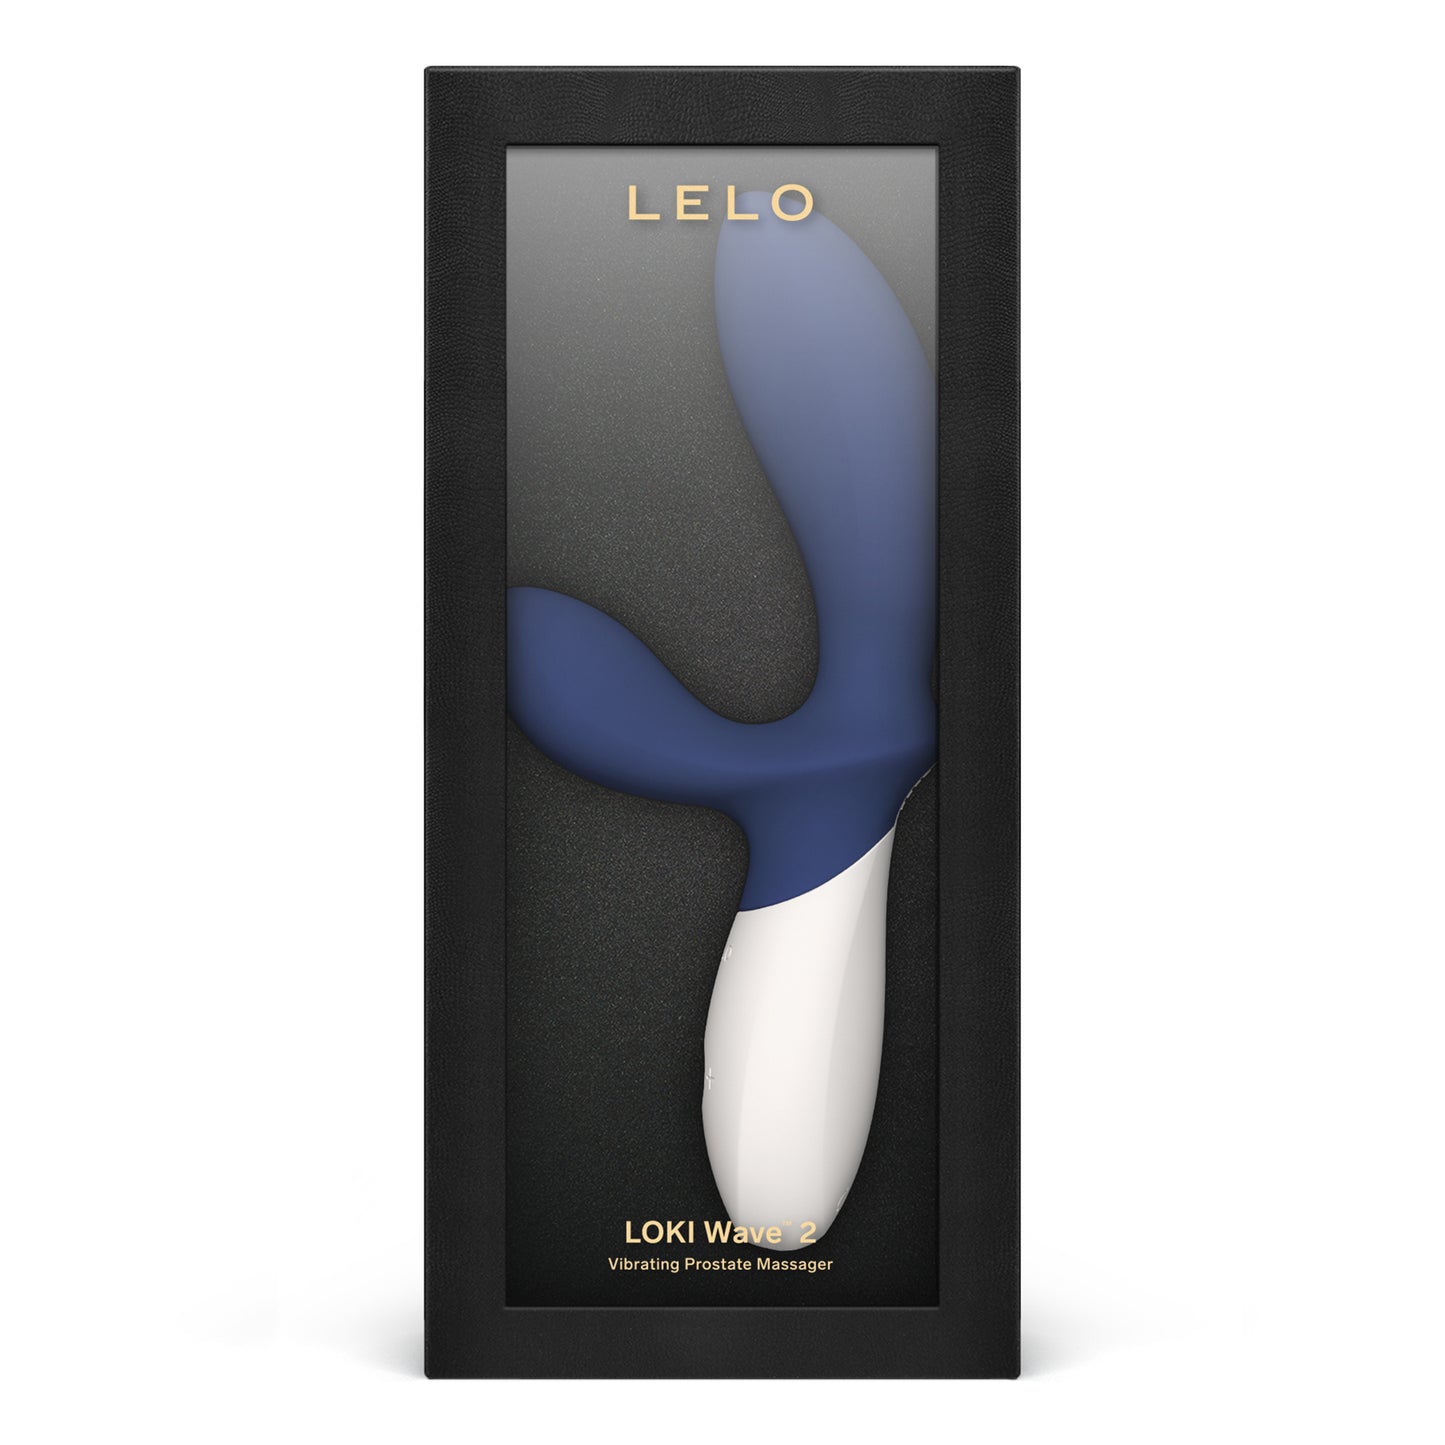 Lelo - Loki Wave 2 Vibrating Prostate Massager Base Blue - 4